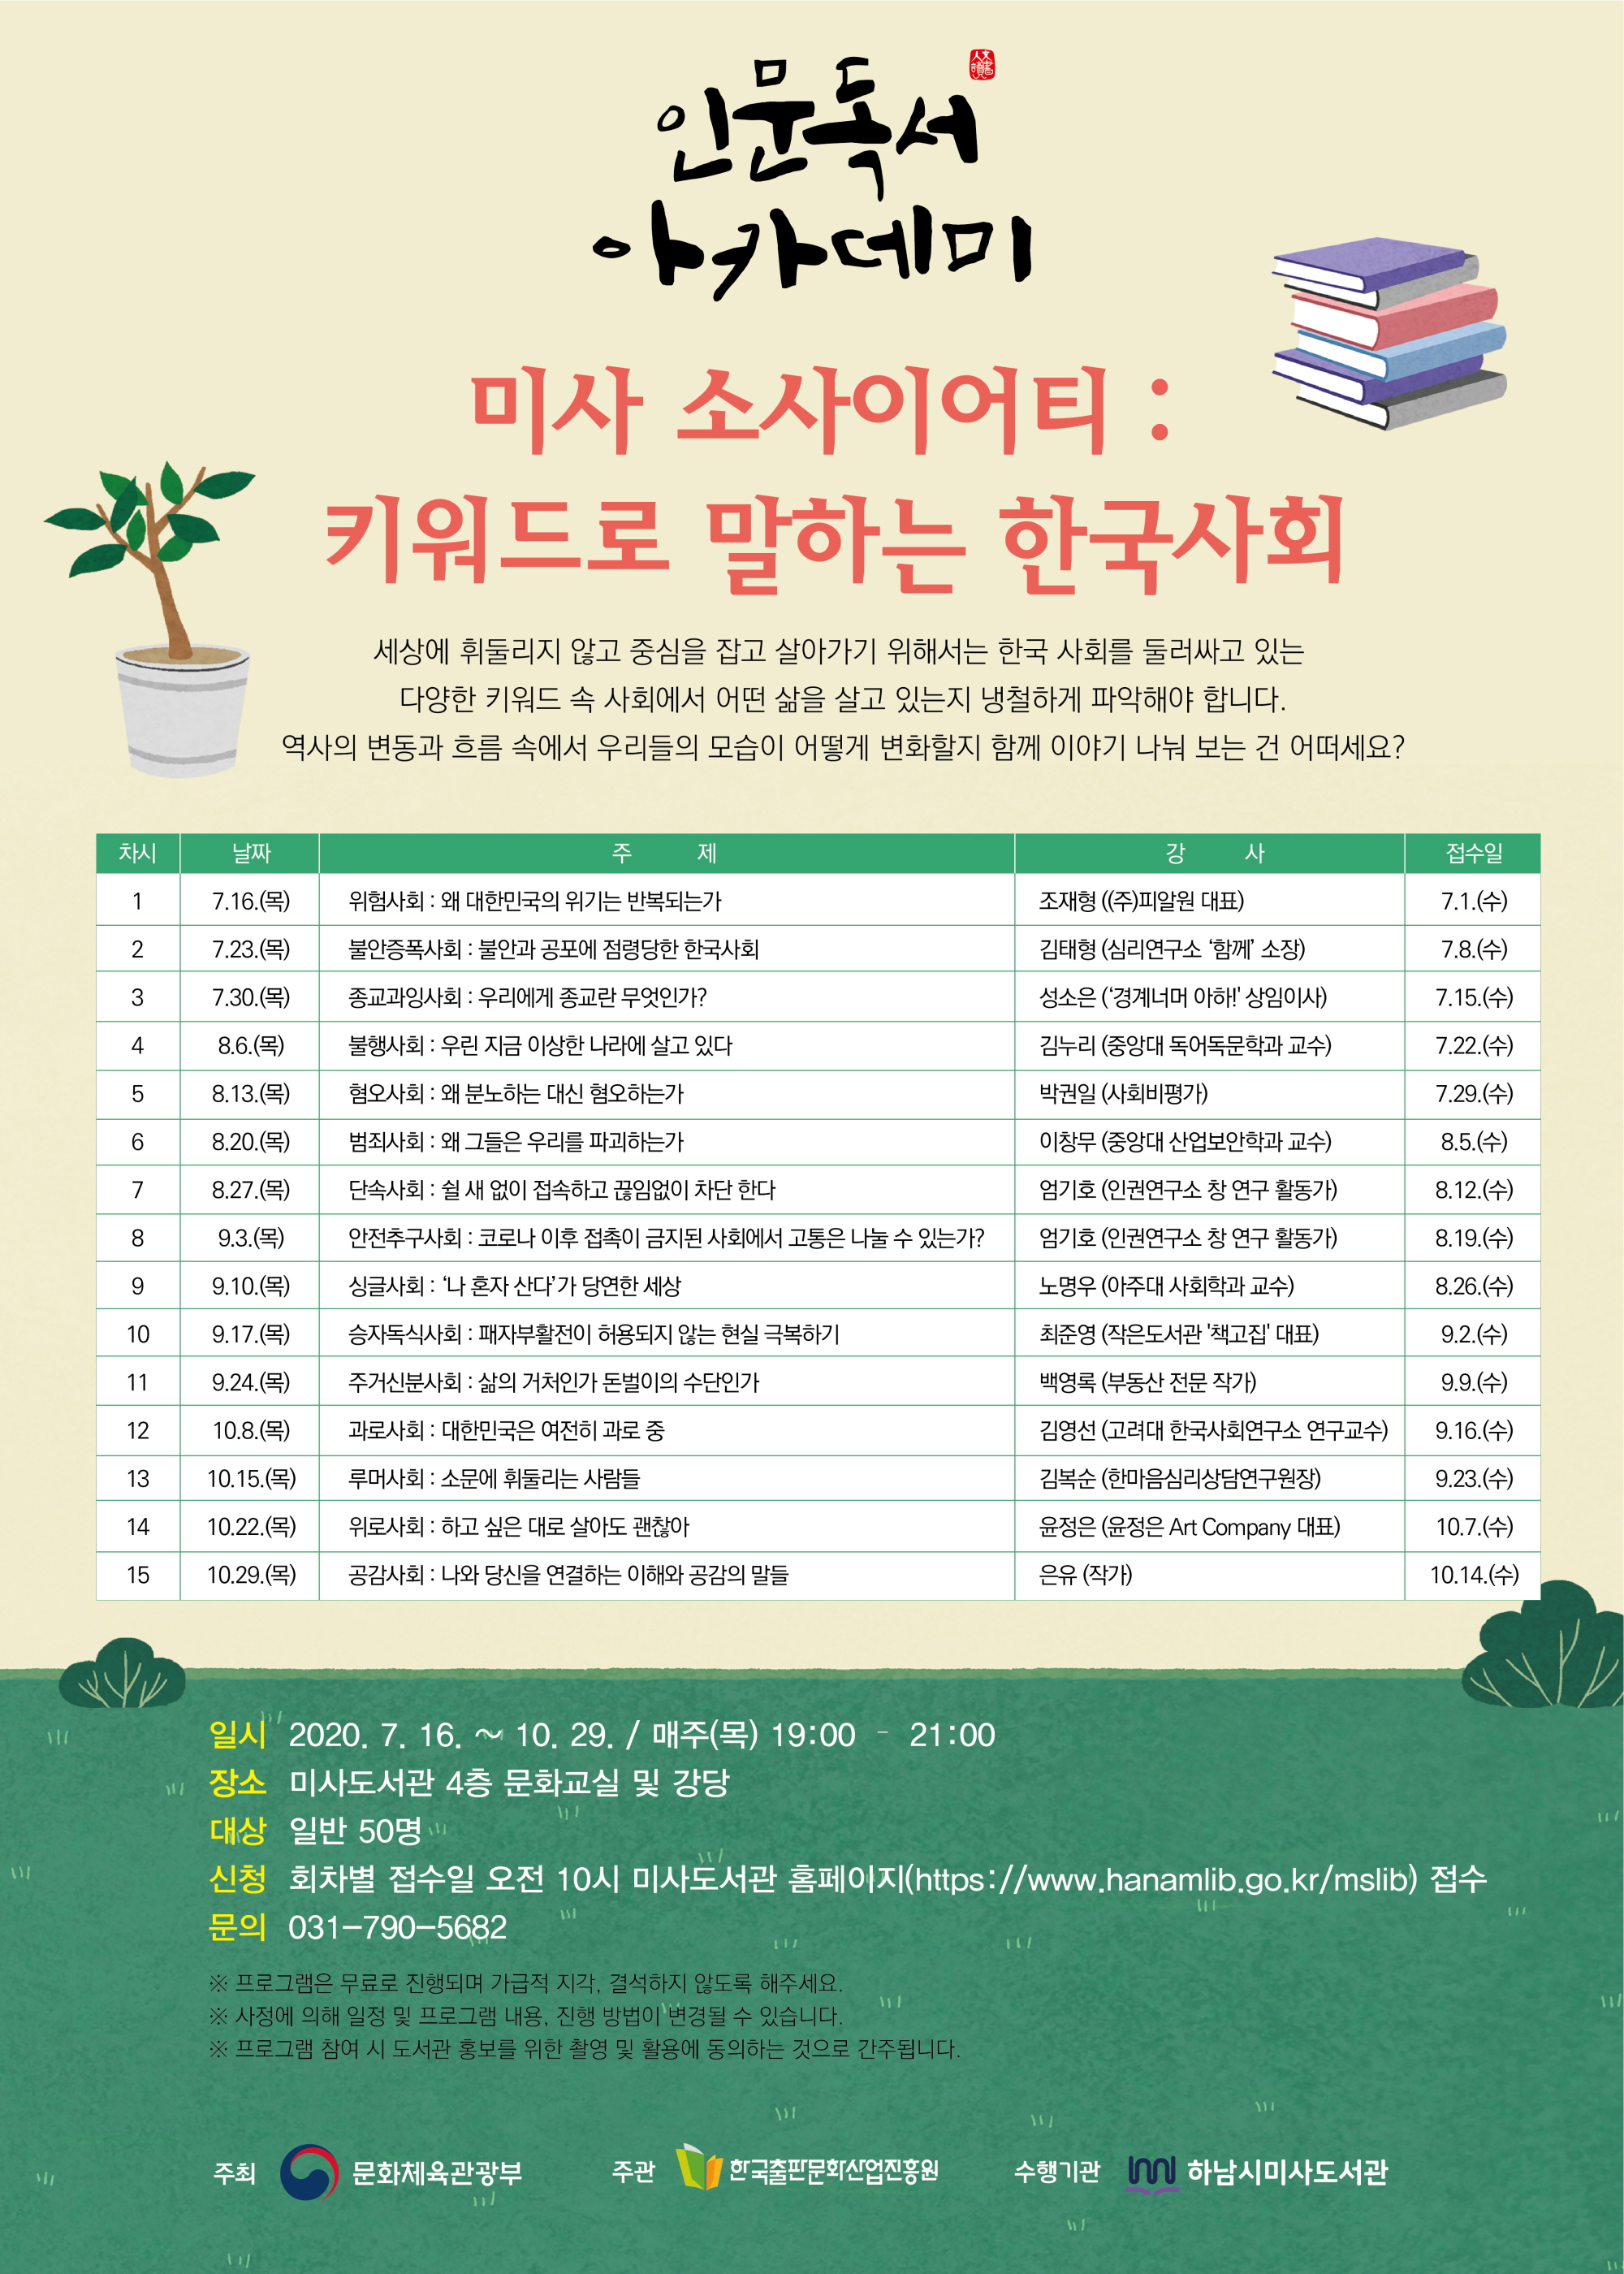 하남시미사도서관, 10월 ‘인문독서아카데미’ 운영